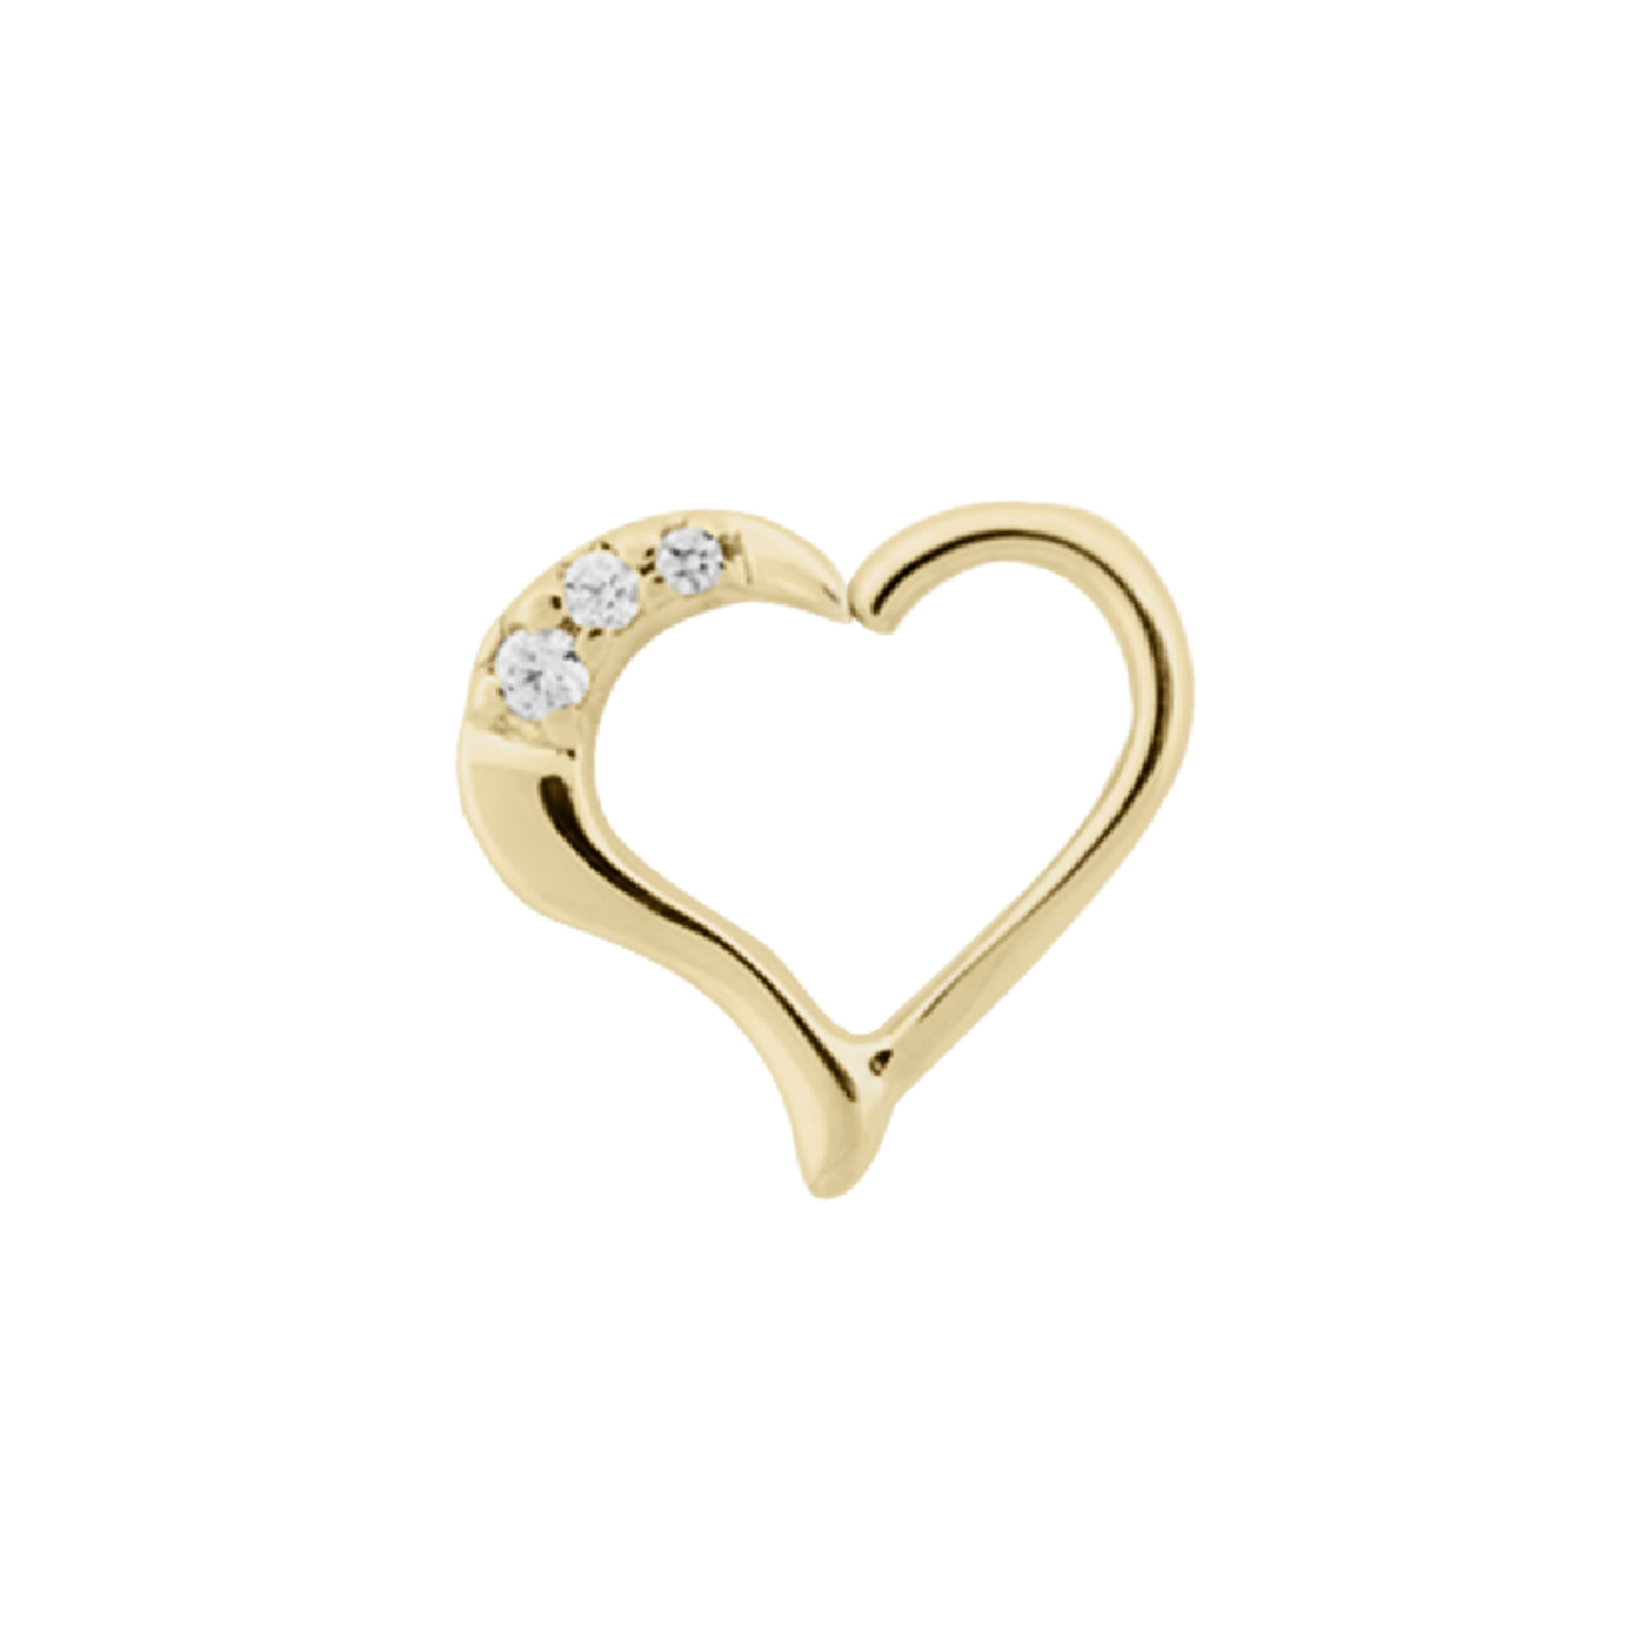 LeRoi Leroi 16g 3/8 "Mina" heart seam ring with CZ